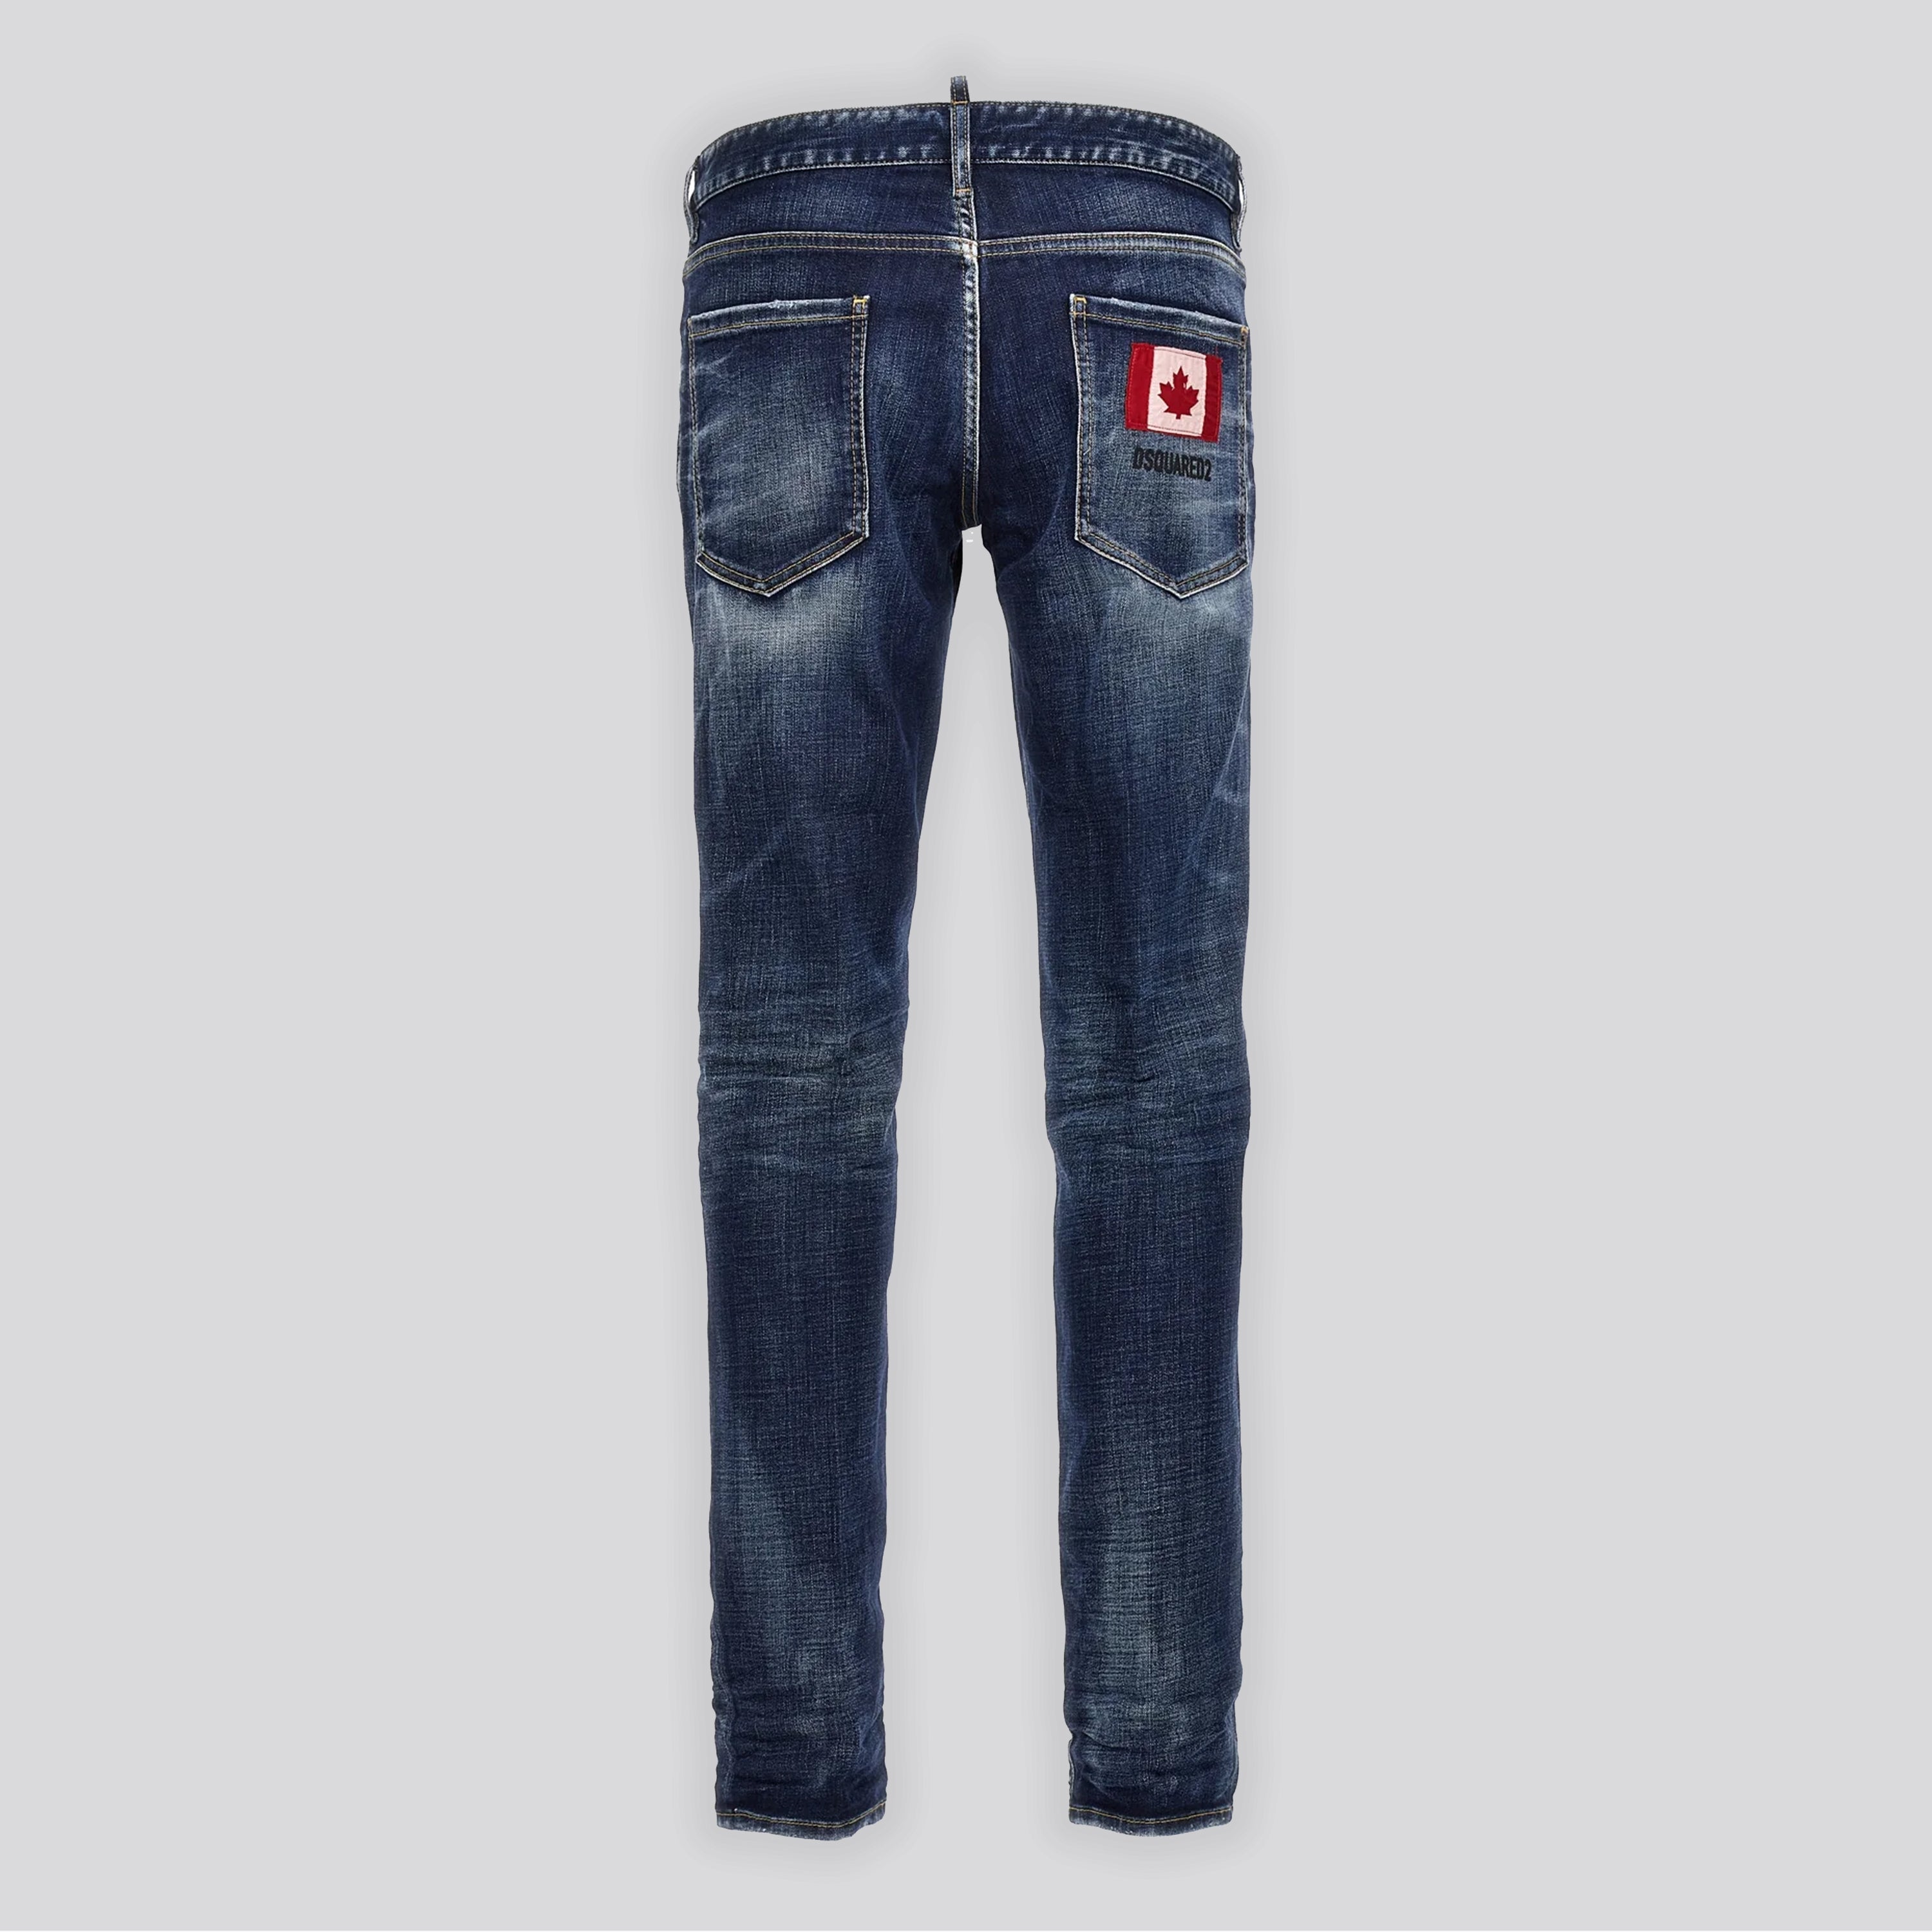 Jeans Denim Dsquared2 Slim Canada Flag